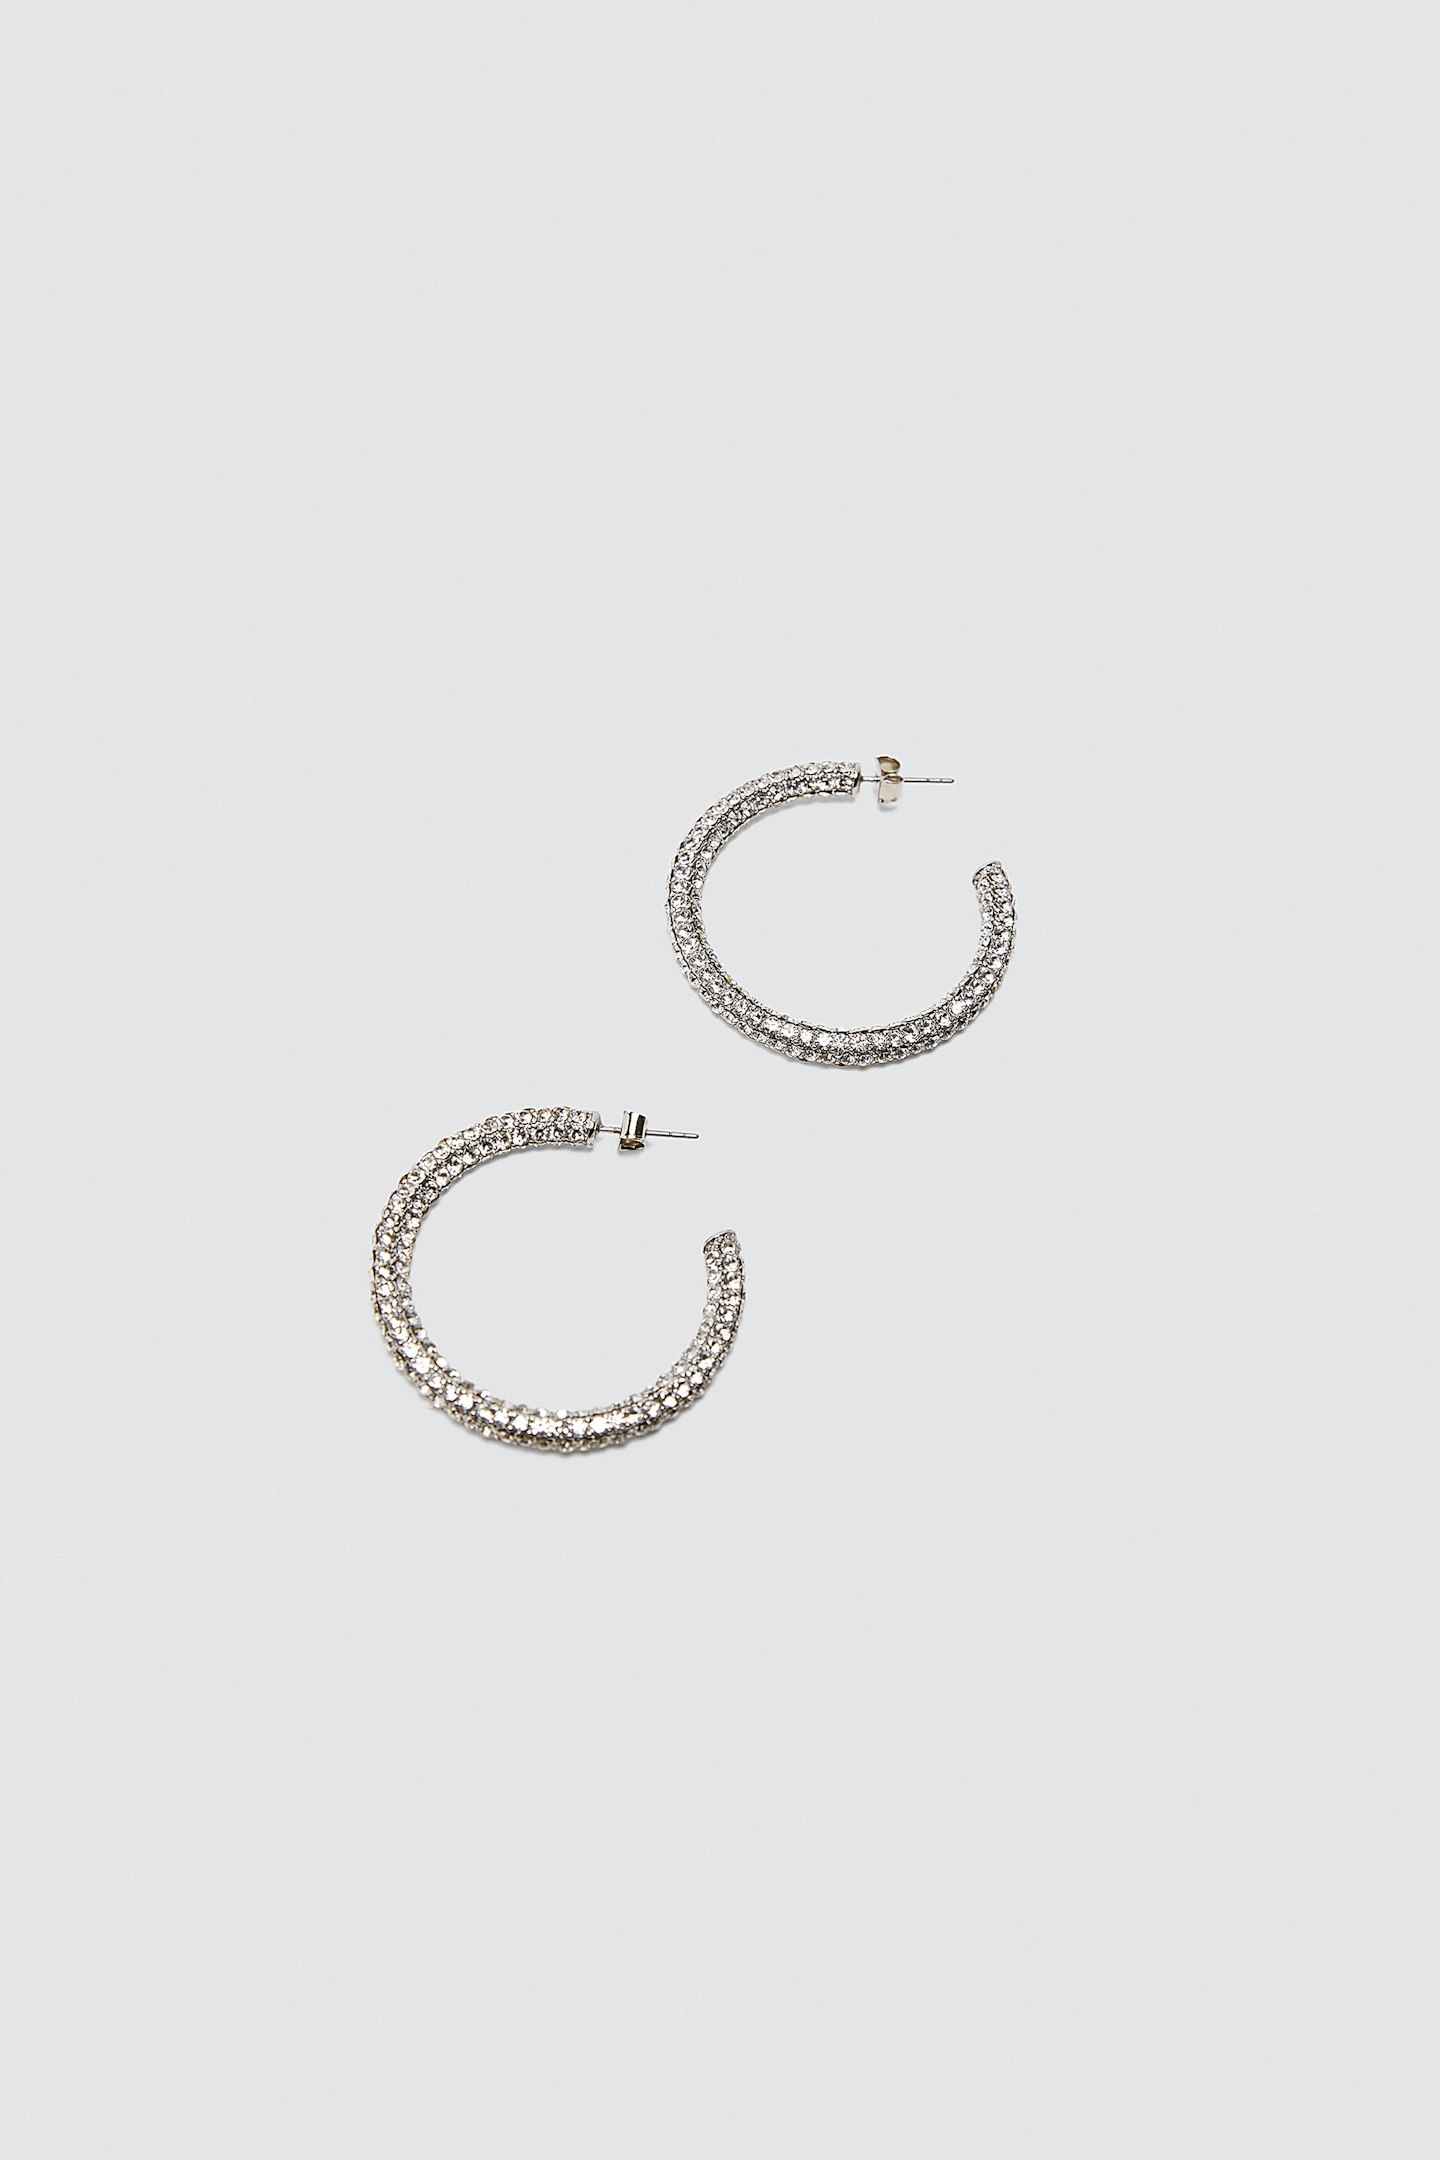 Zara, Bejewelled Hoop Earrings, £12.99